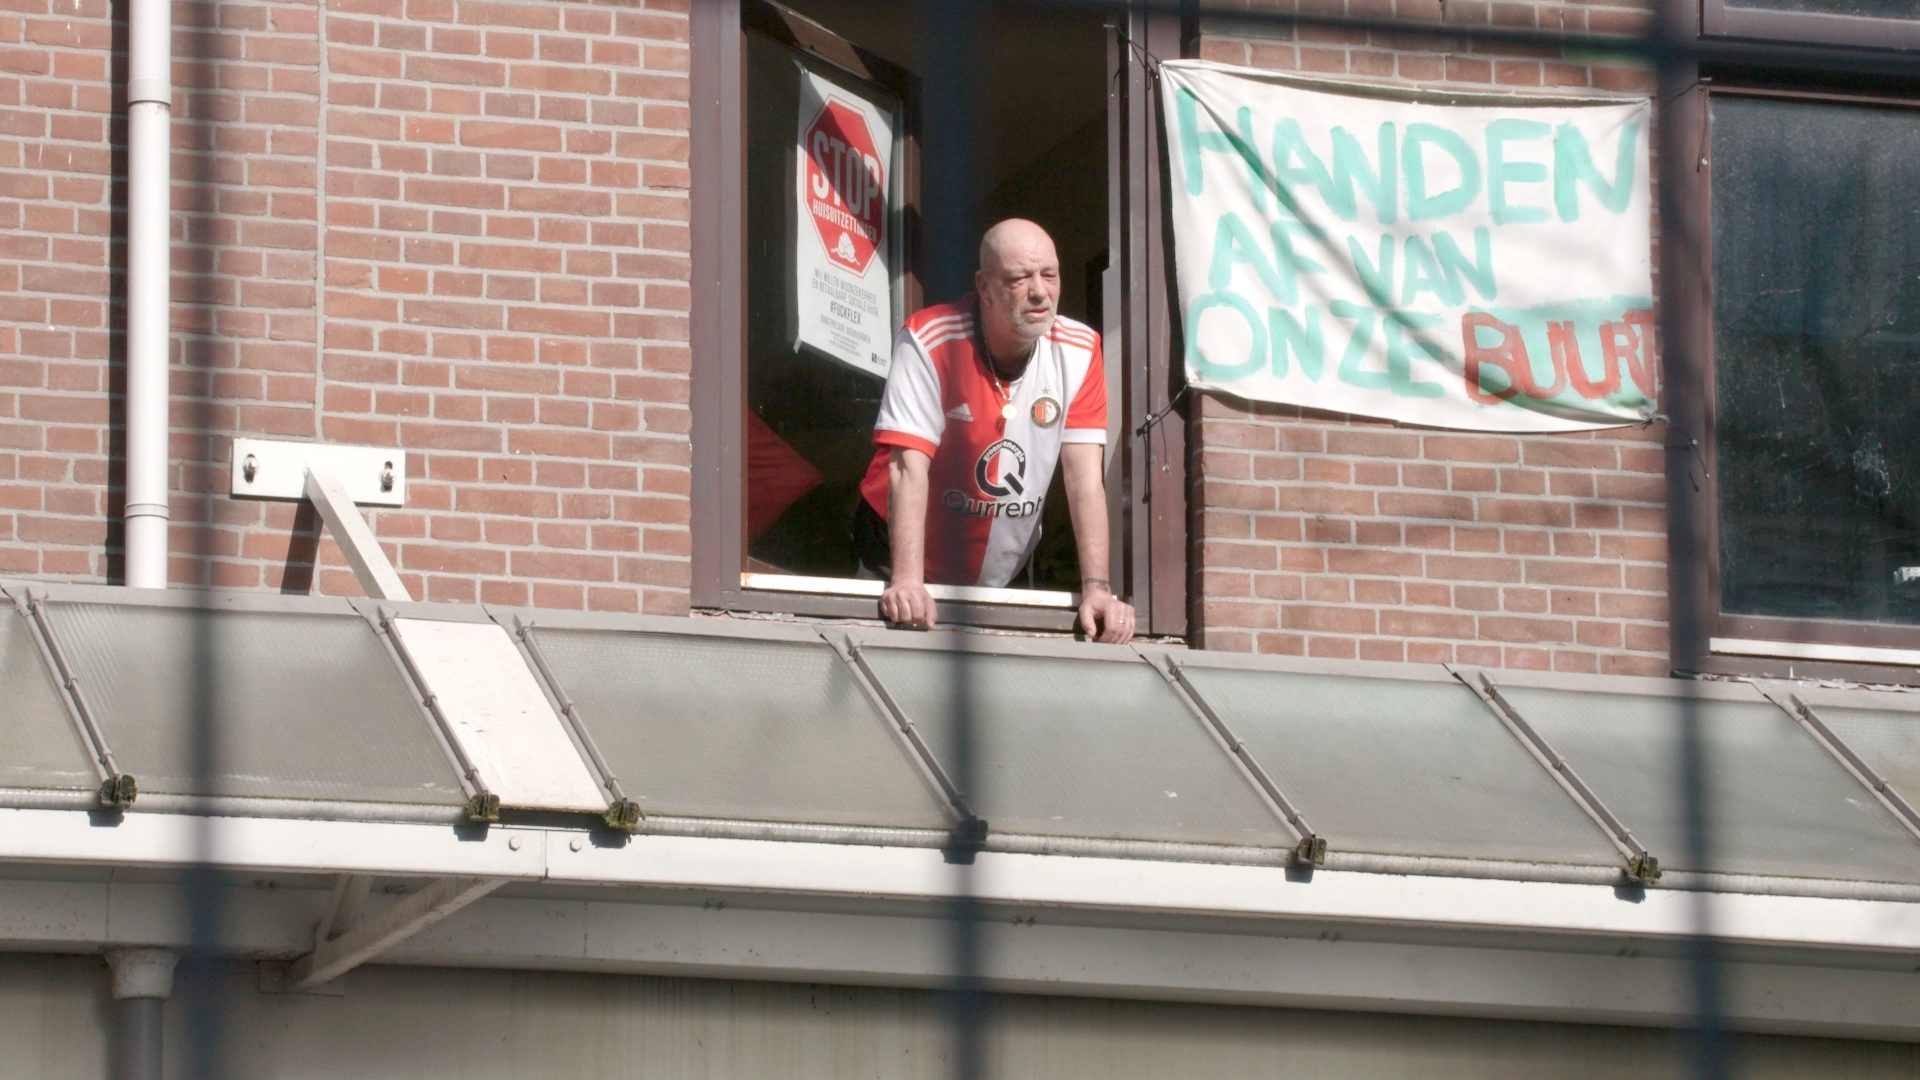 Man hangt uit het raam met spandoek 'Handen af van onze buurt', in Tweebos Rotterdam